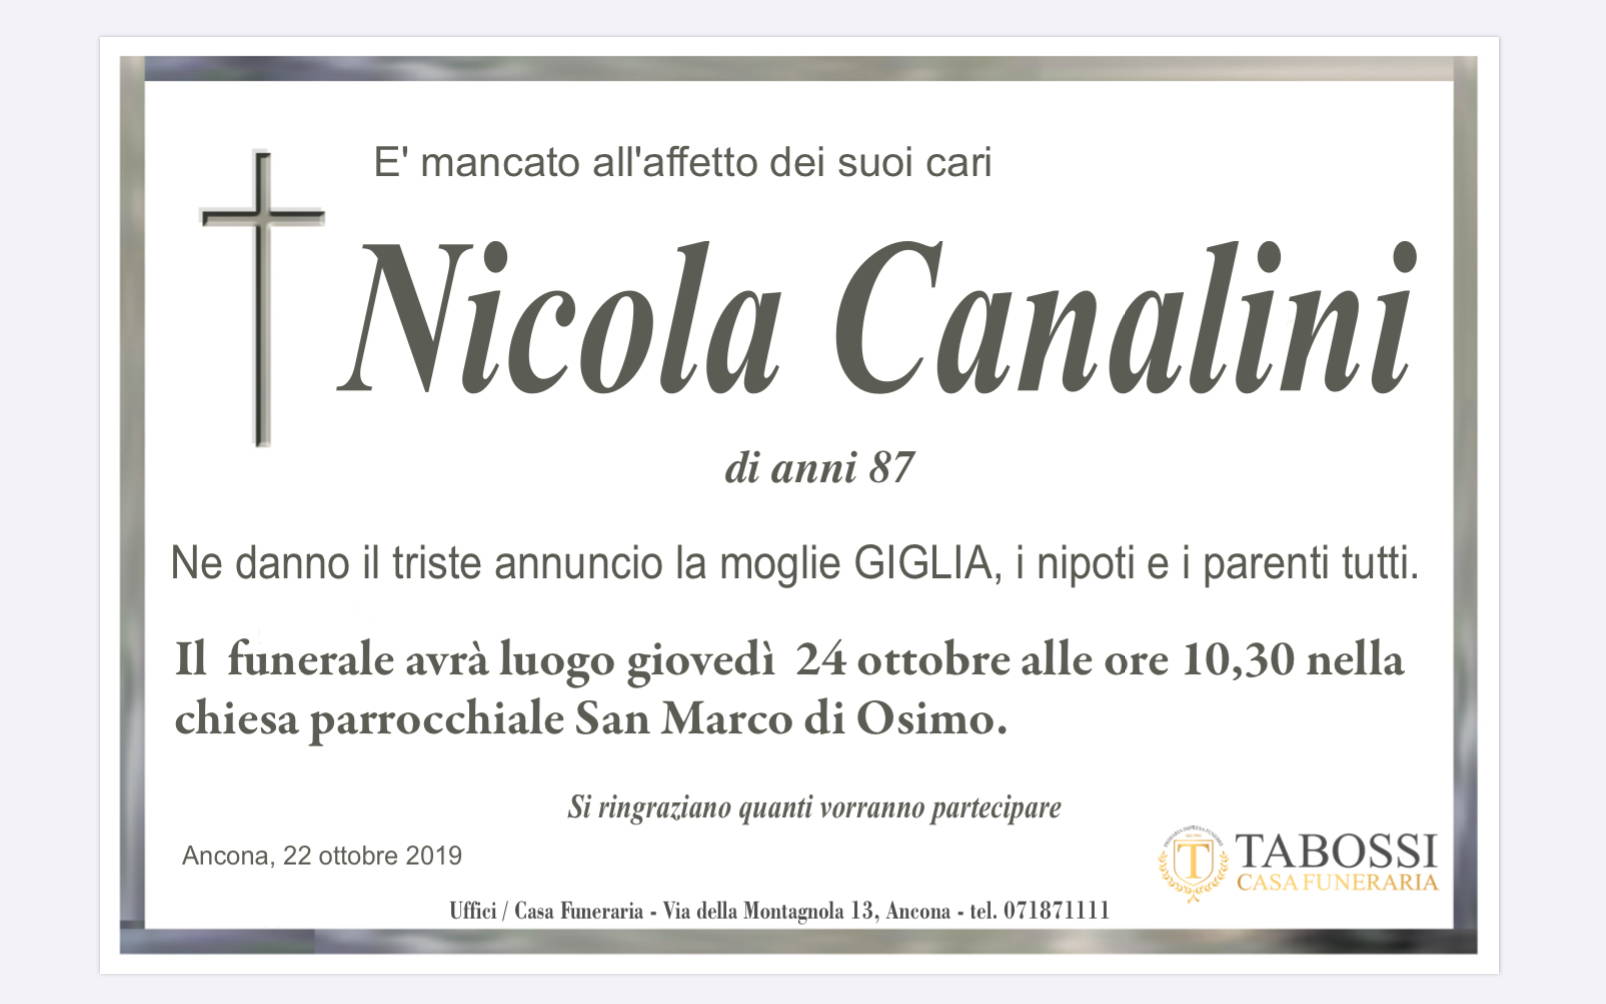 Nicola Canalini